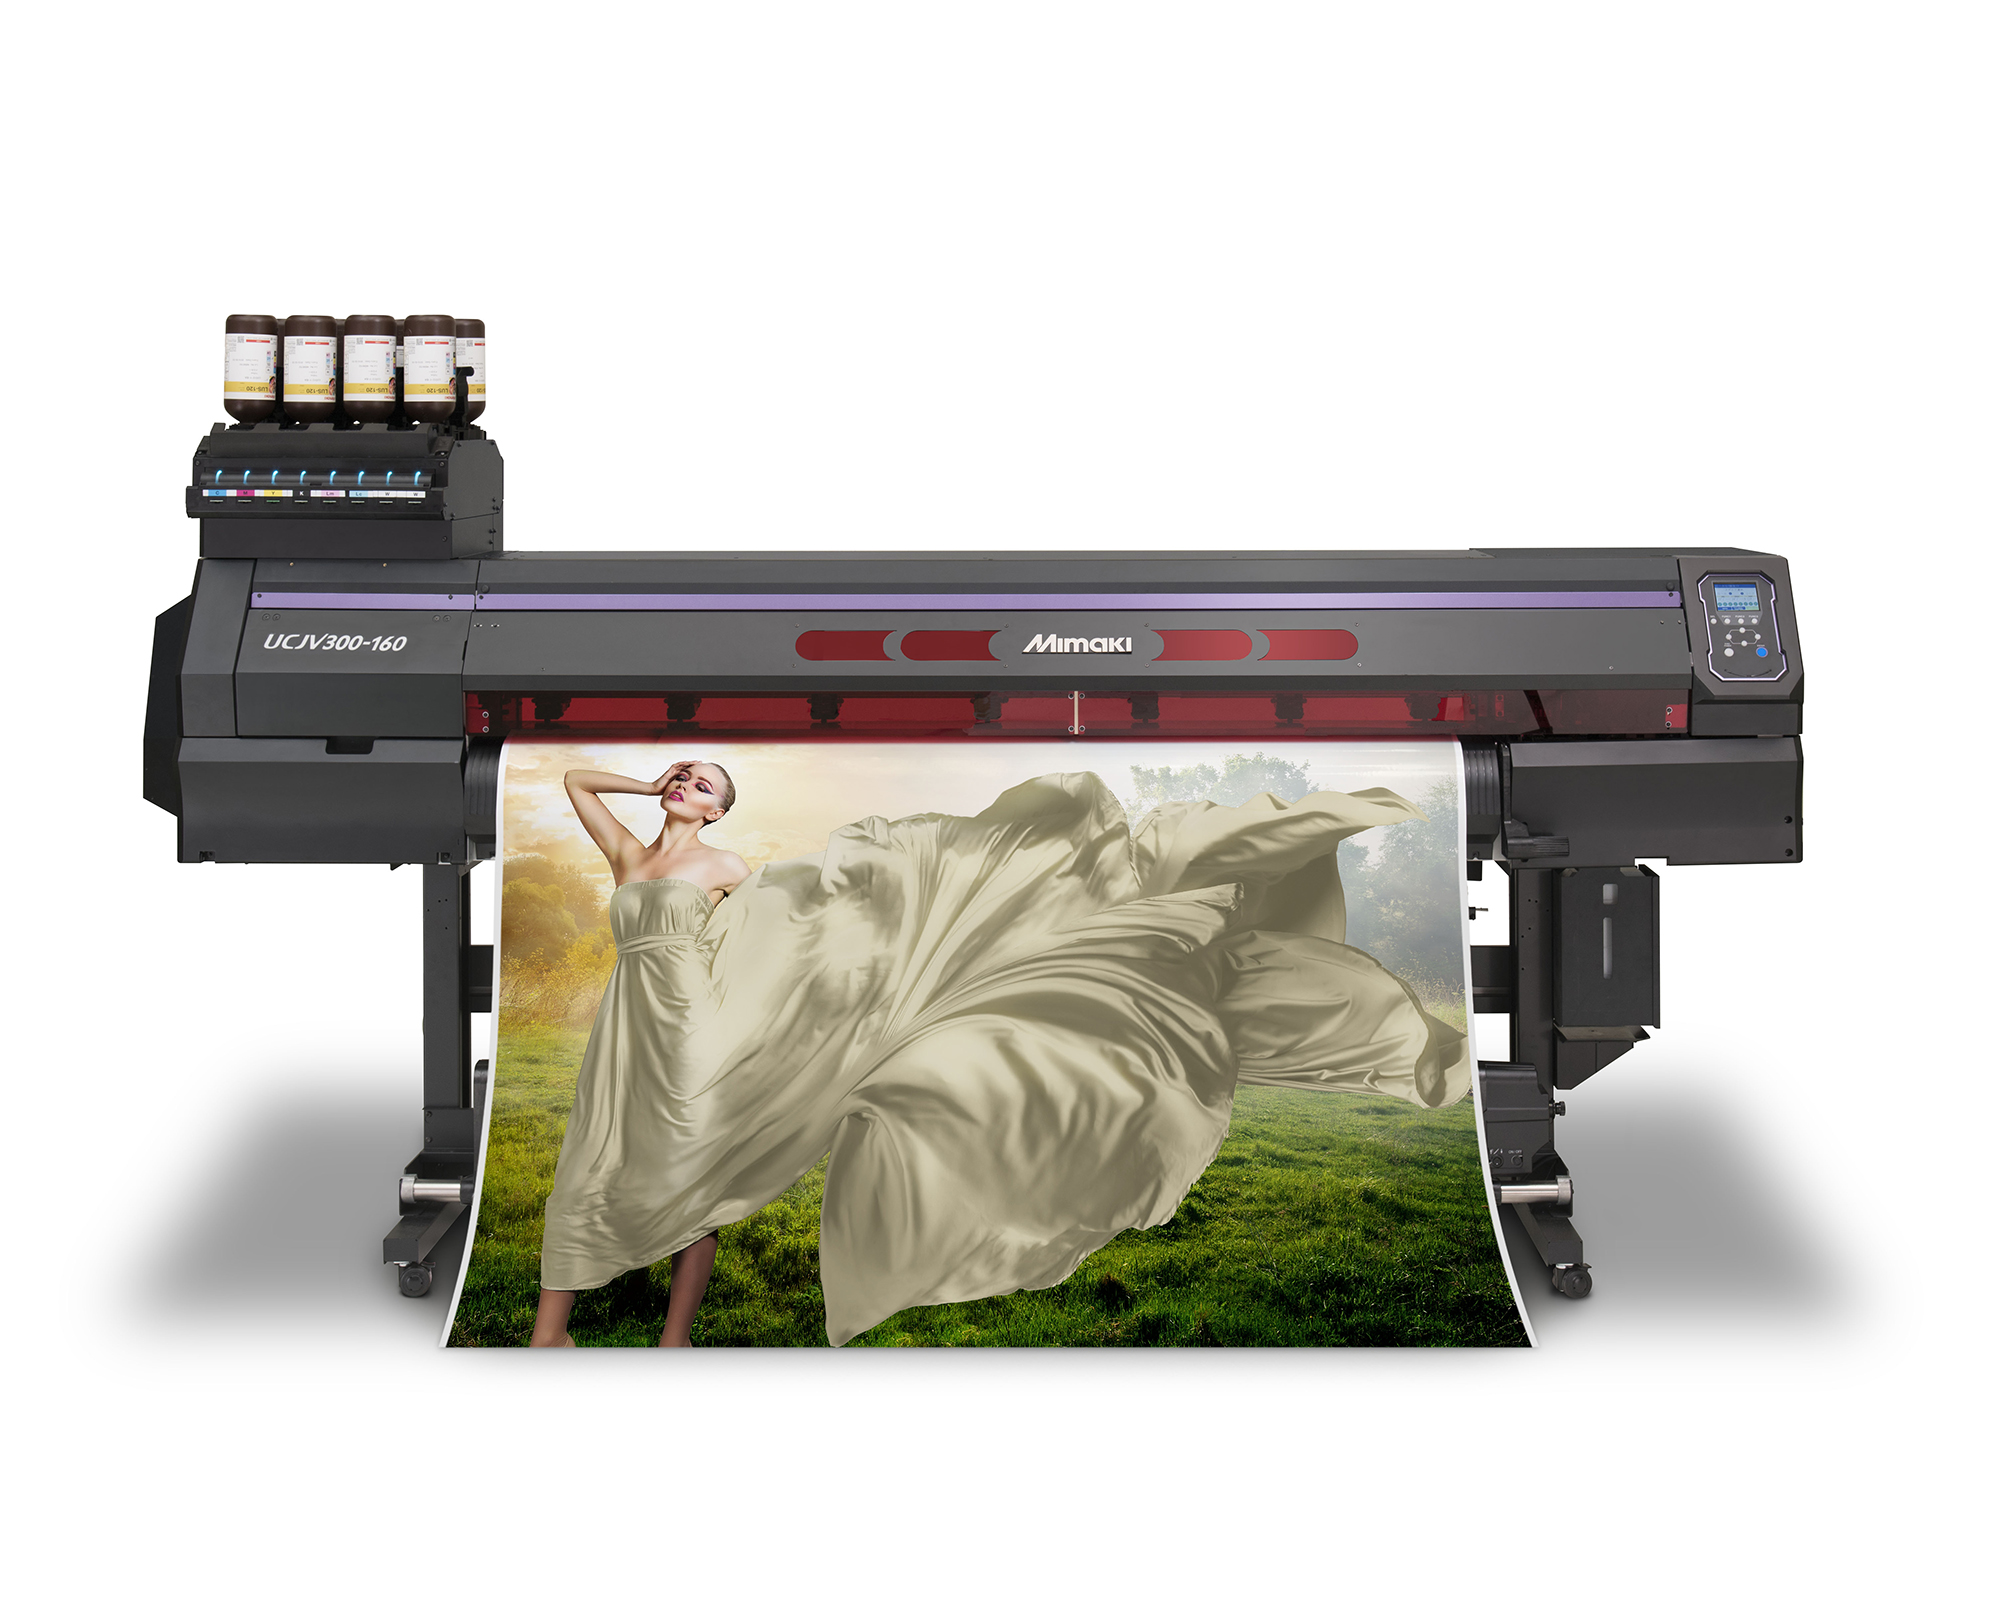 Mimaki introducerar innovativa print- och cut-system